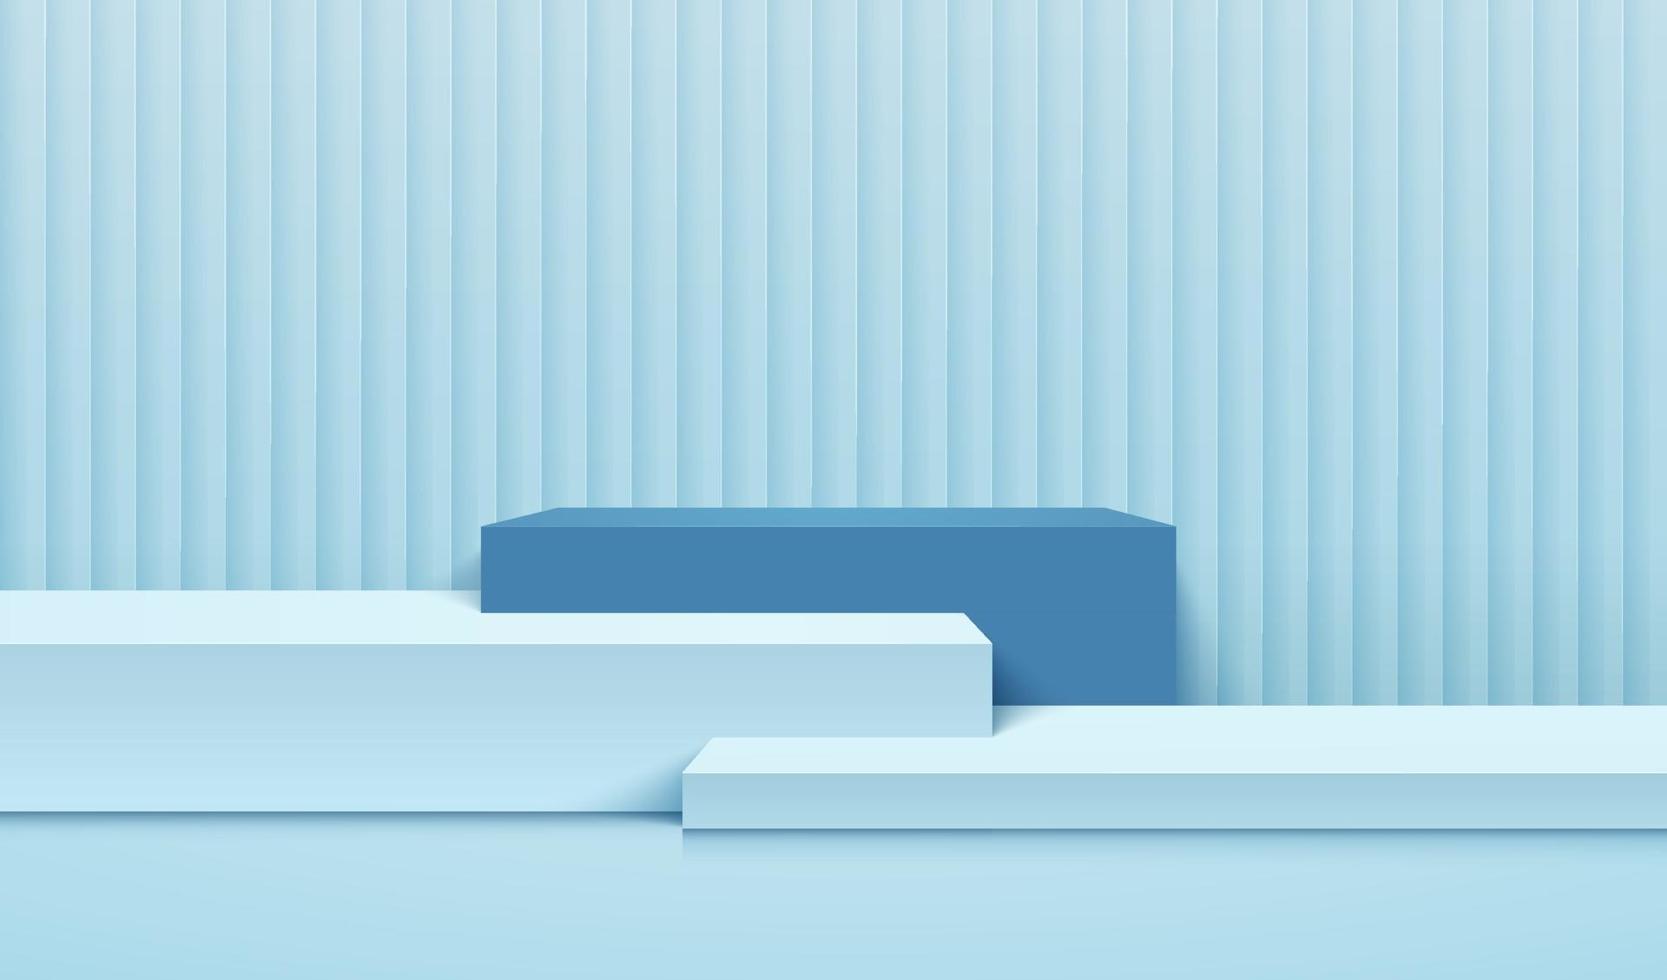 display cubo astratto per prodotto sul sito Web dal design moderno. rendering di sfondo con podio e scena di parete trama blu chiaro minima, rendering 3d disegno di forma geometrica. illustrazione vettoriale